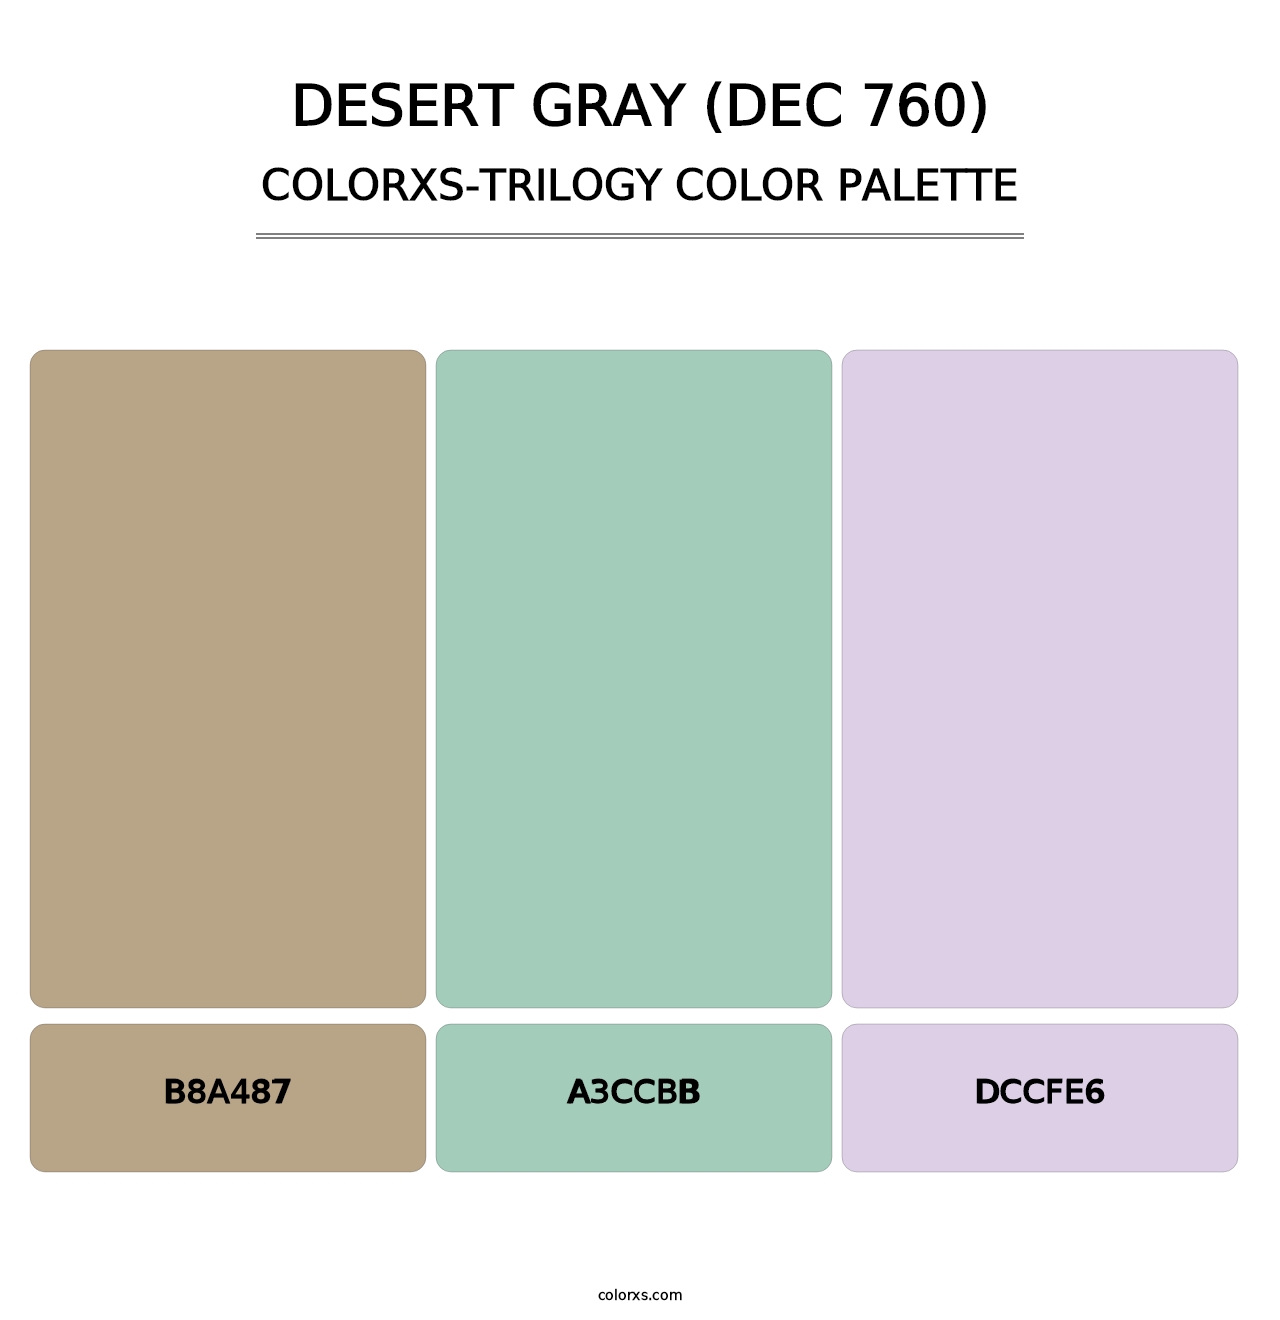 Desert Gray (DEC 760) - Colorxs Trilogy Palette